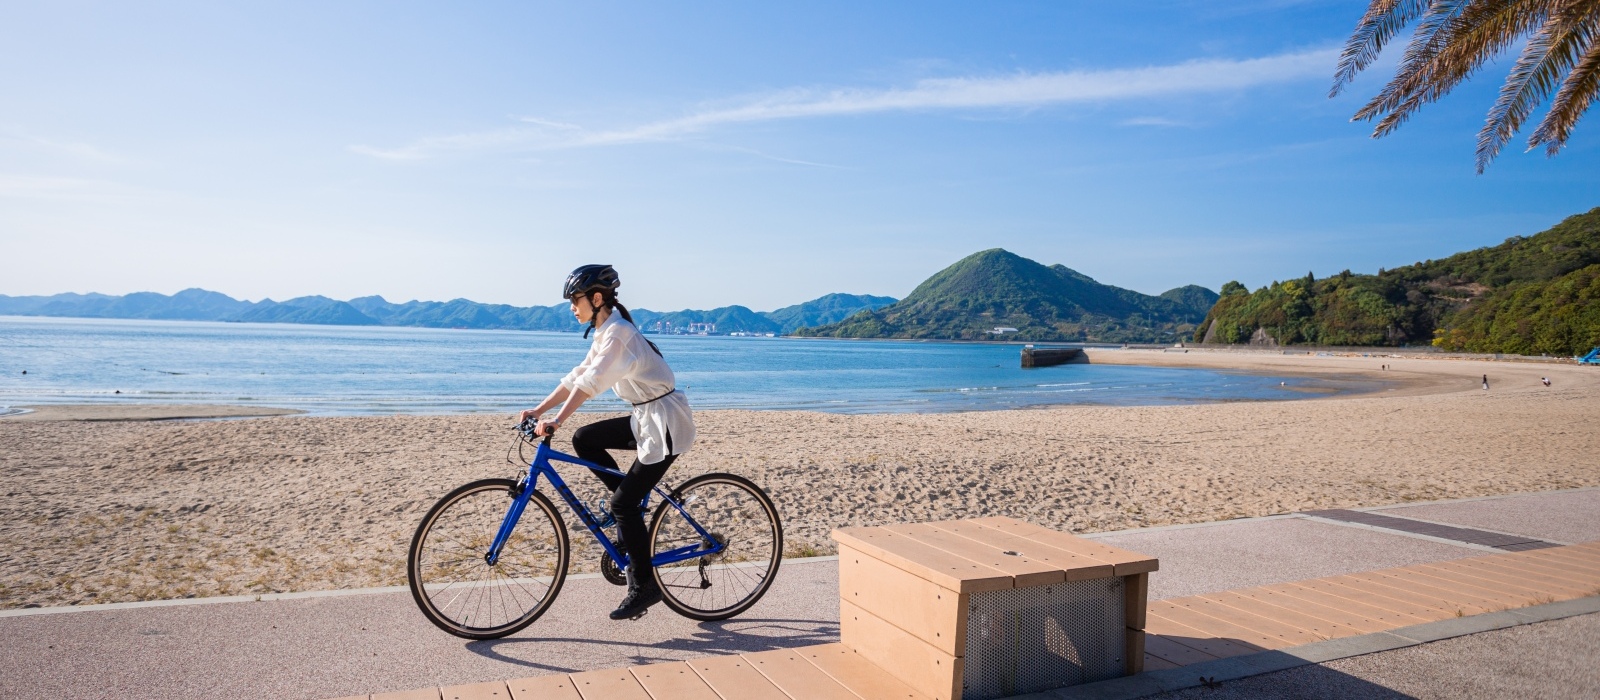 世界的なサイクリングの聖地・しまなみ海道へ出かけてみませんか